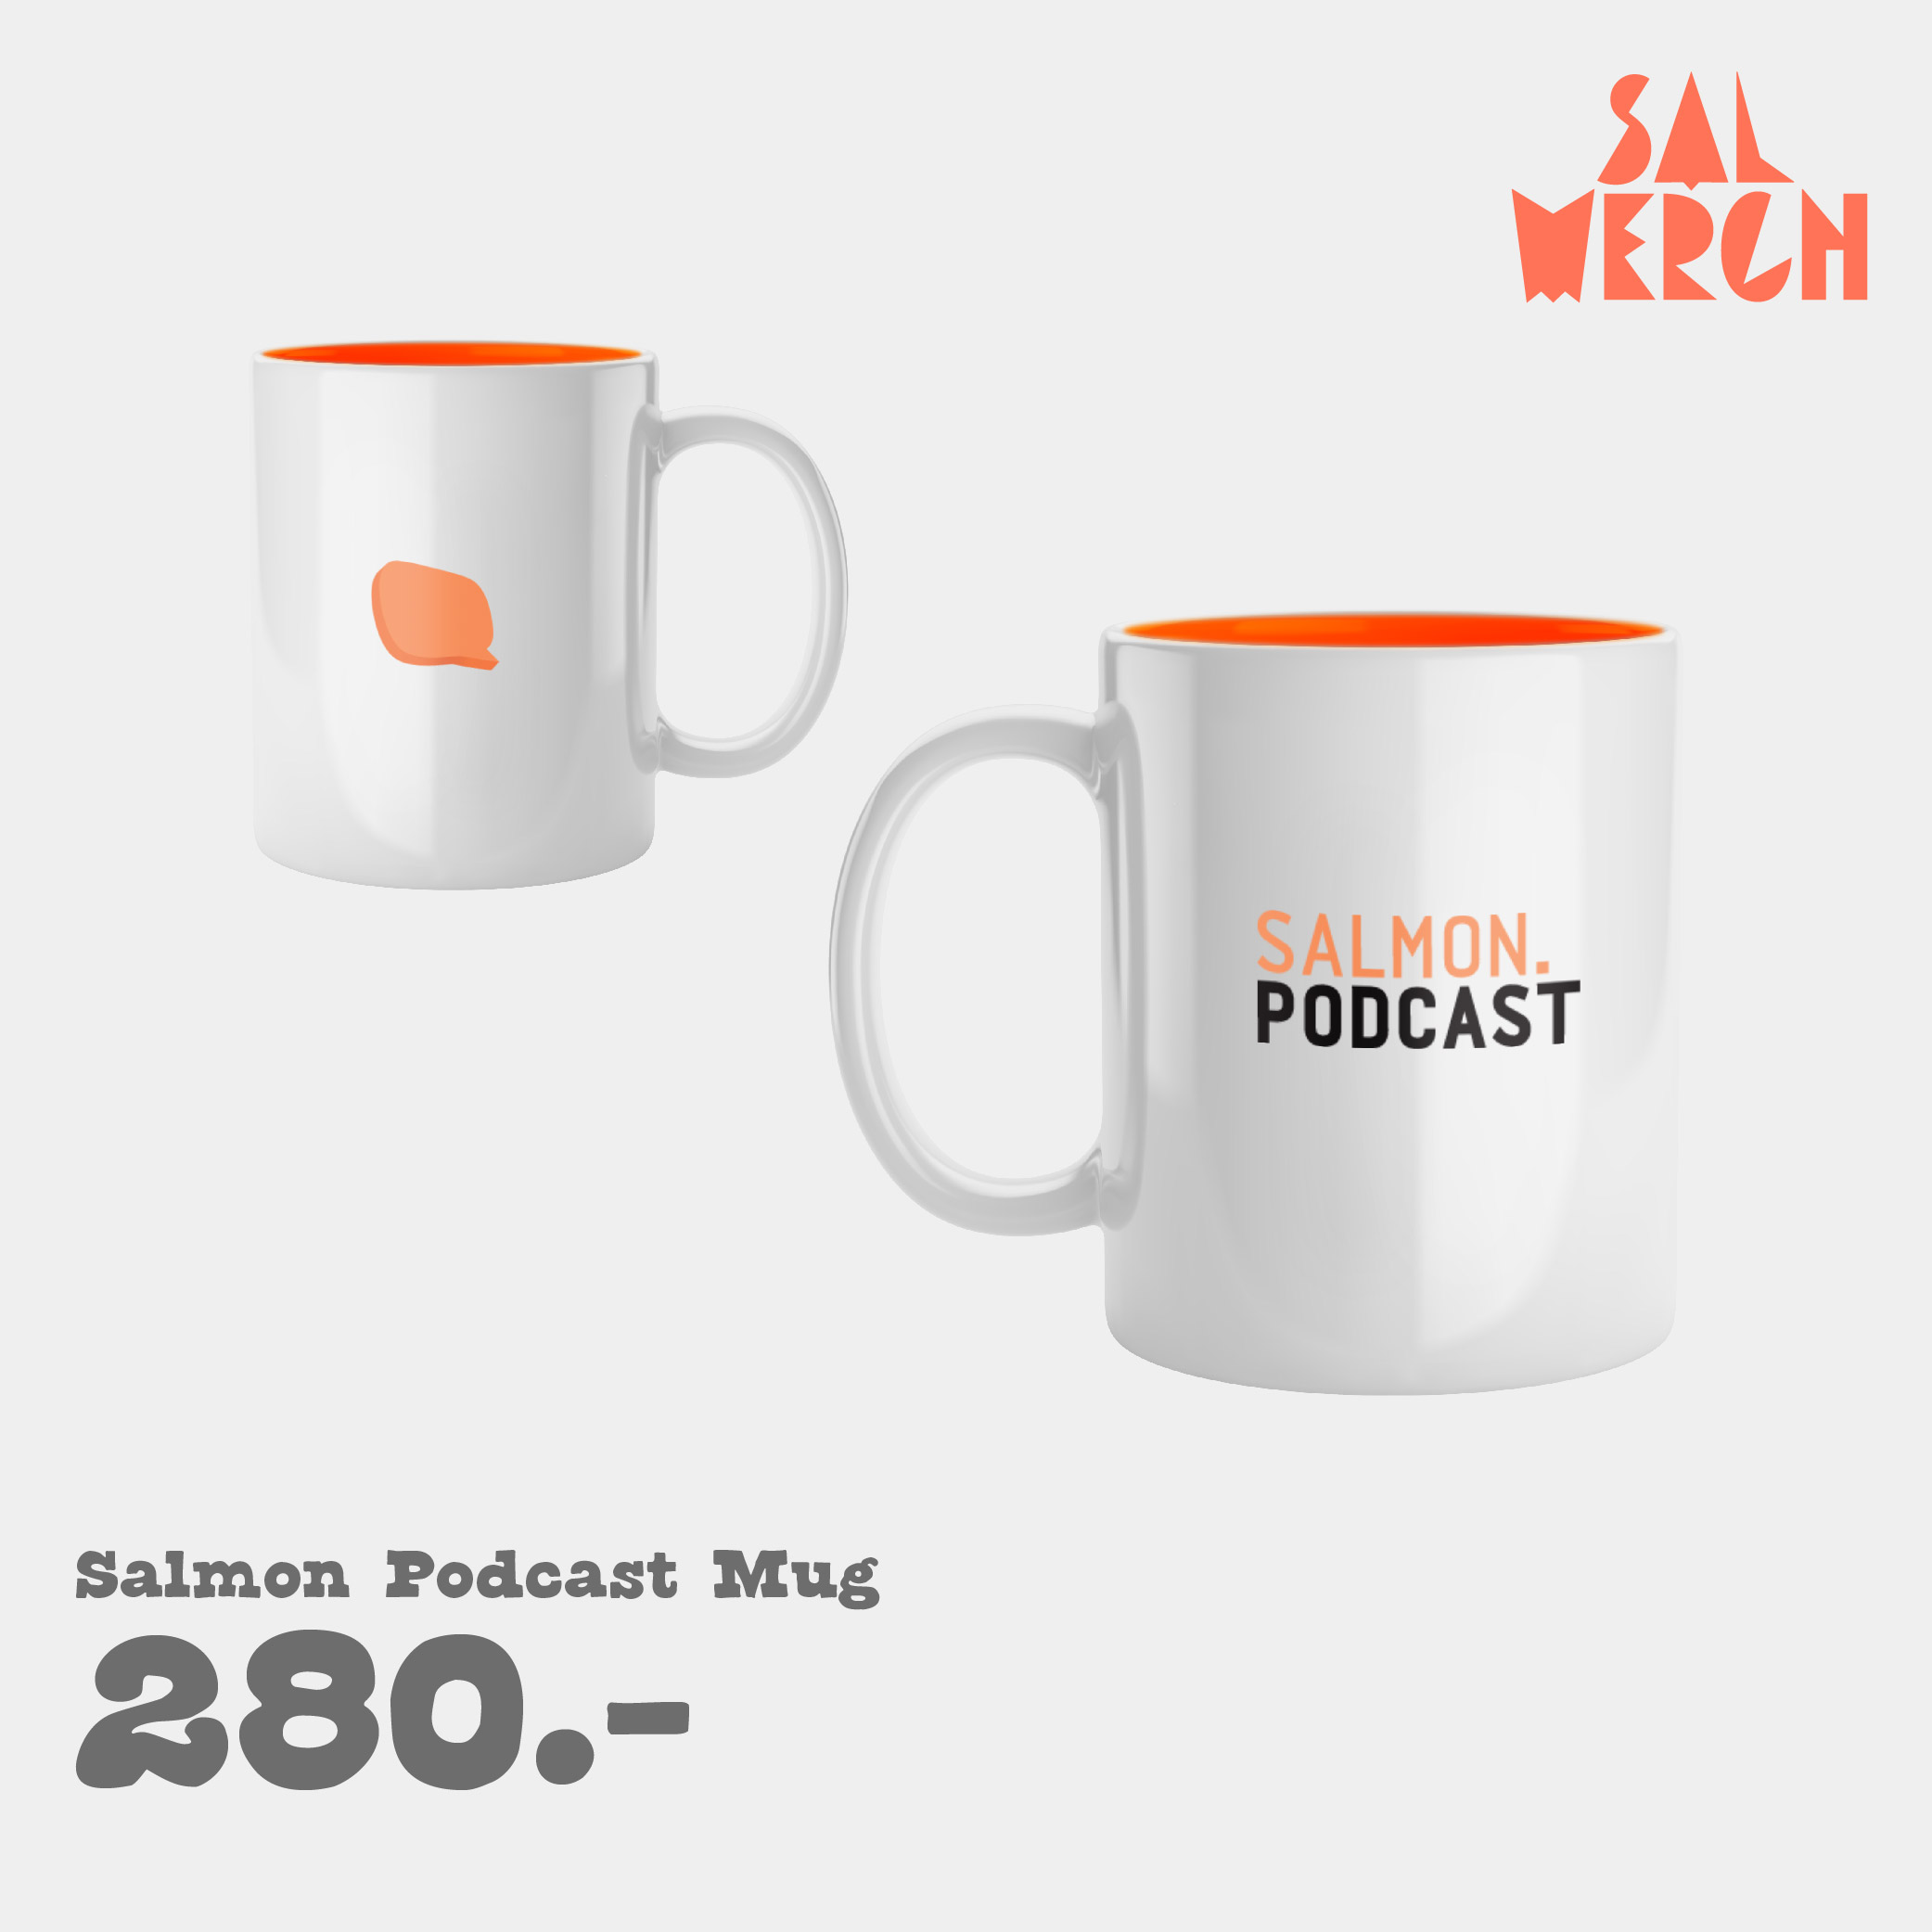 Salmon Podcast Mug